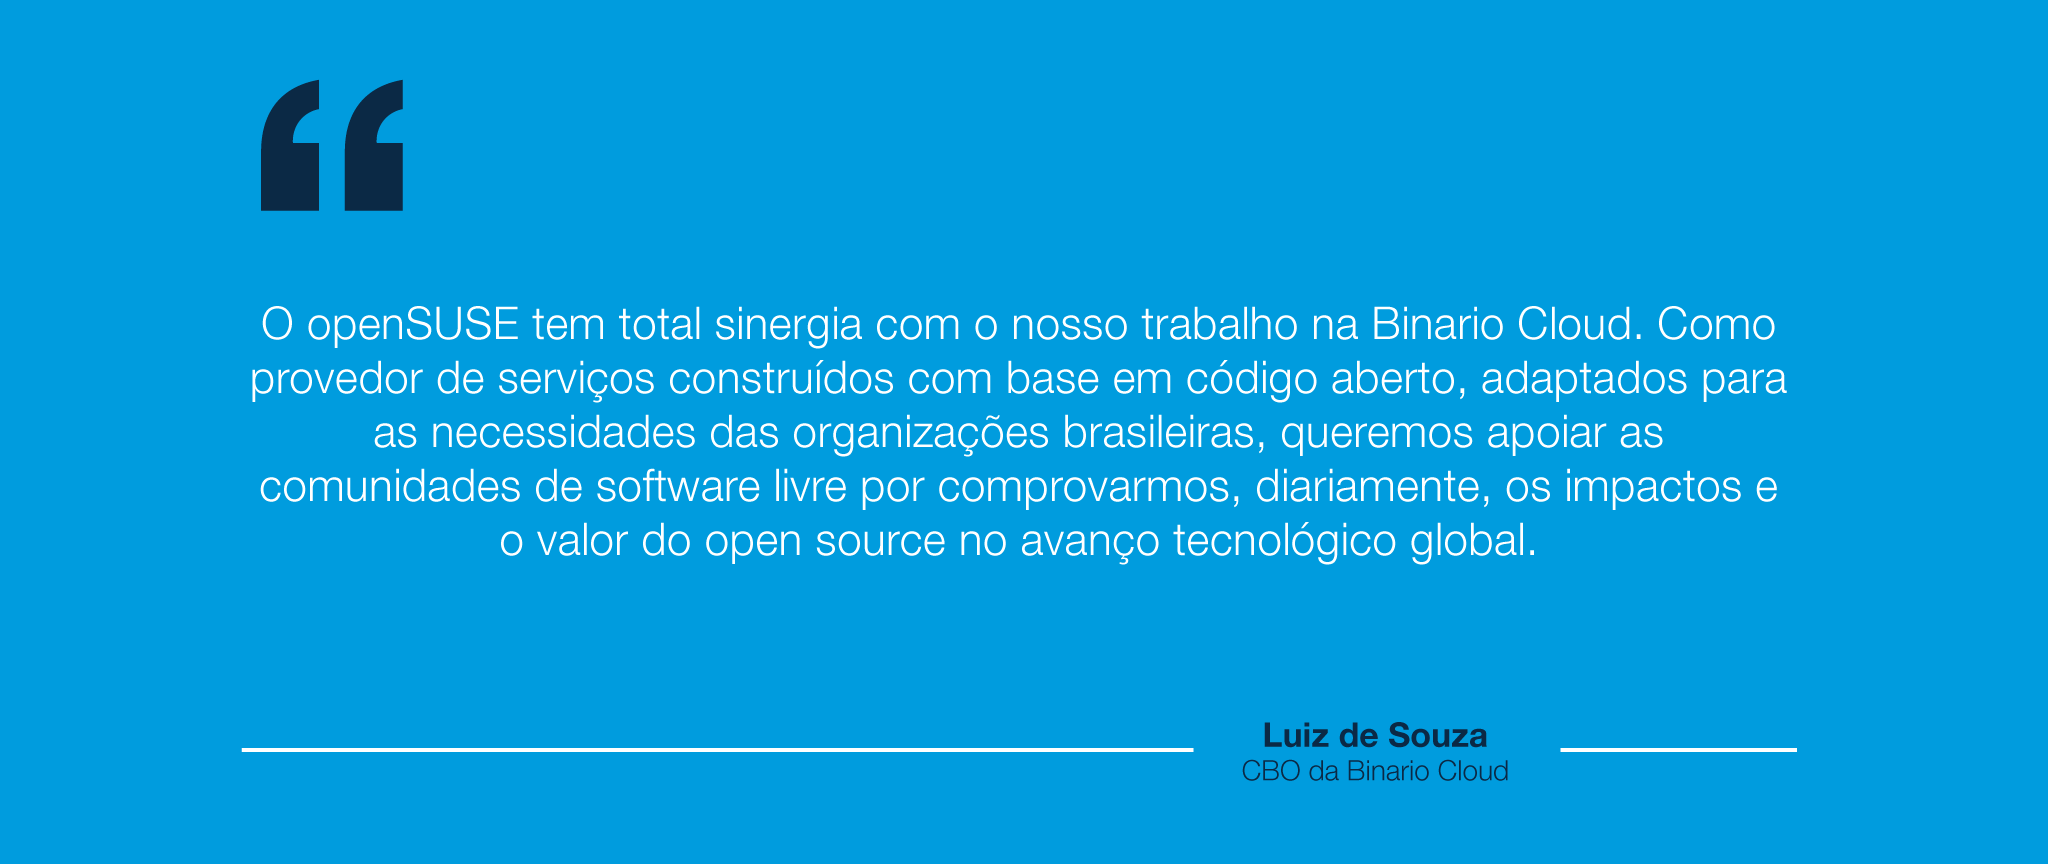 openSUSE-LuizSouza